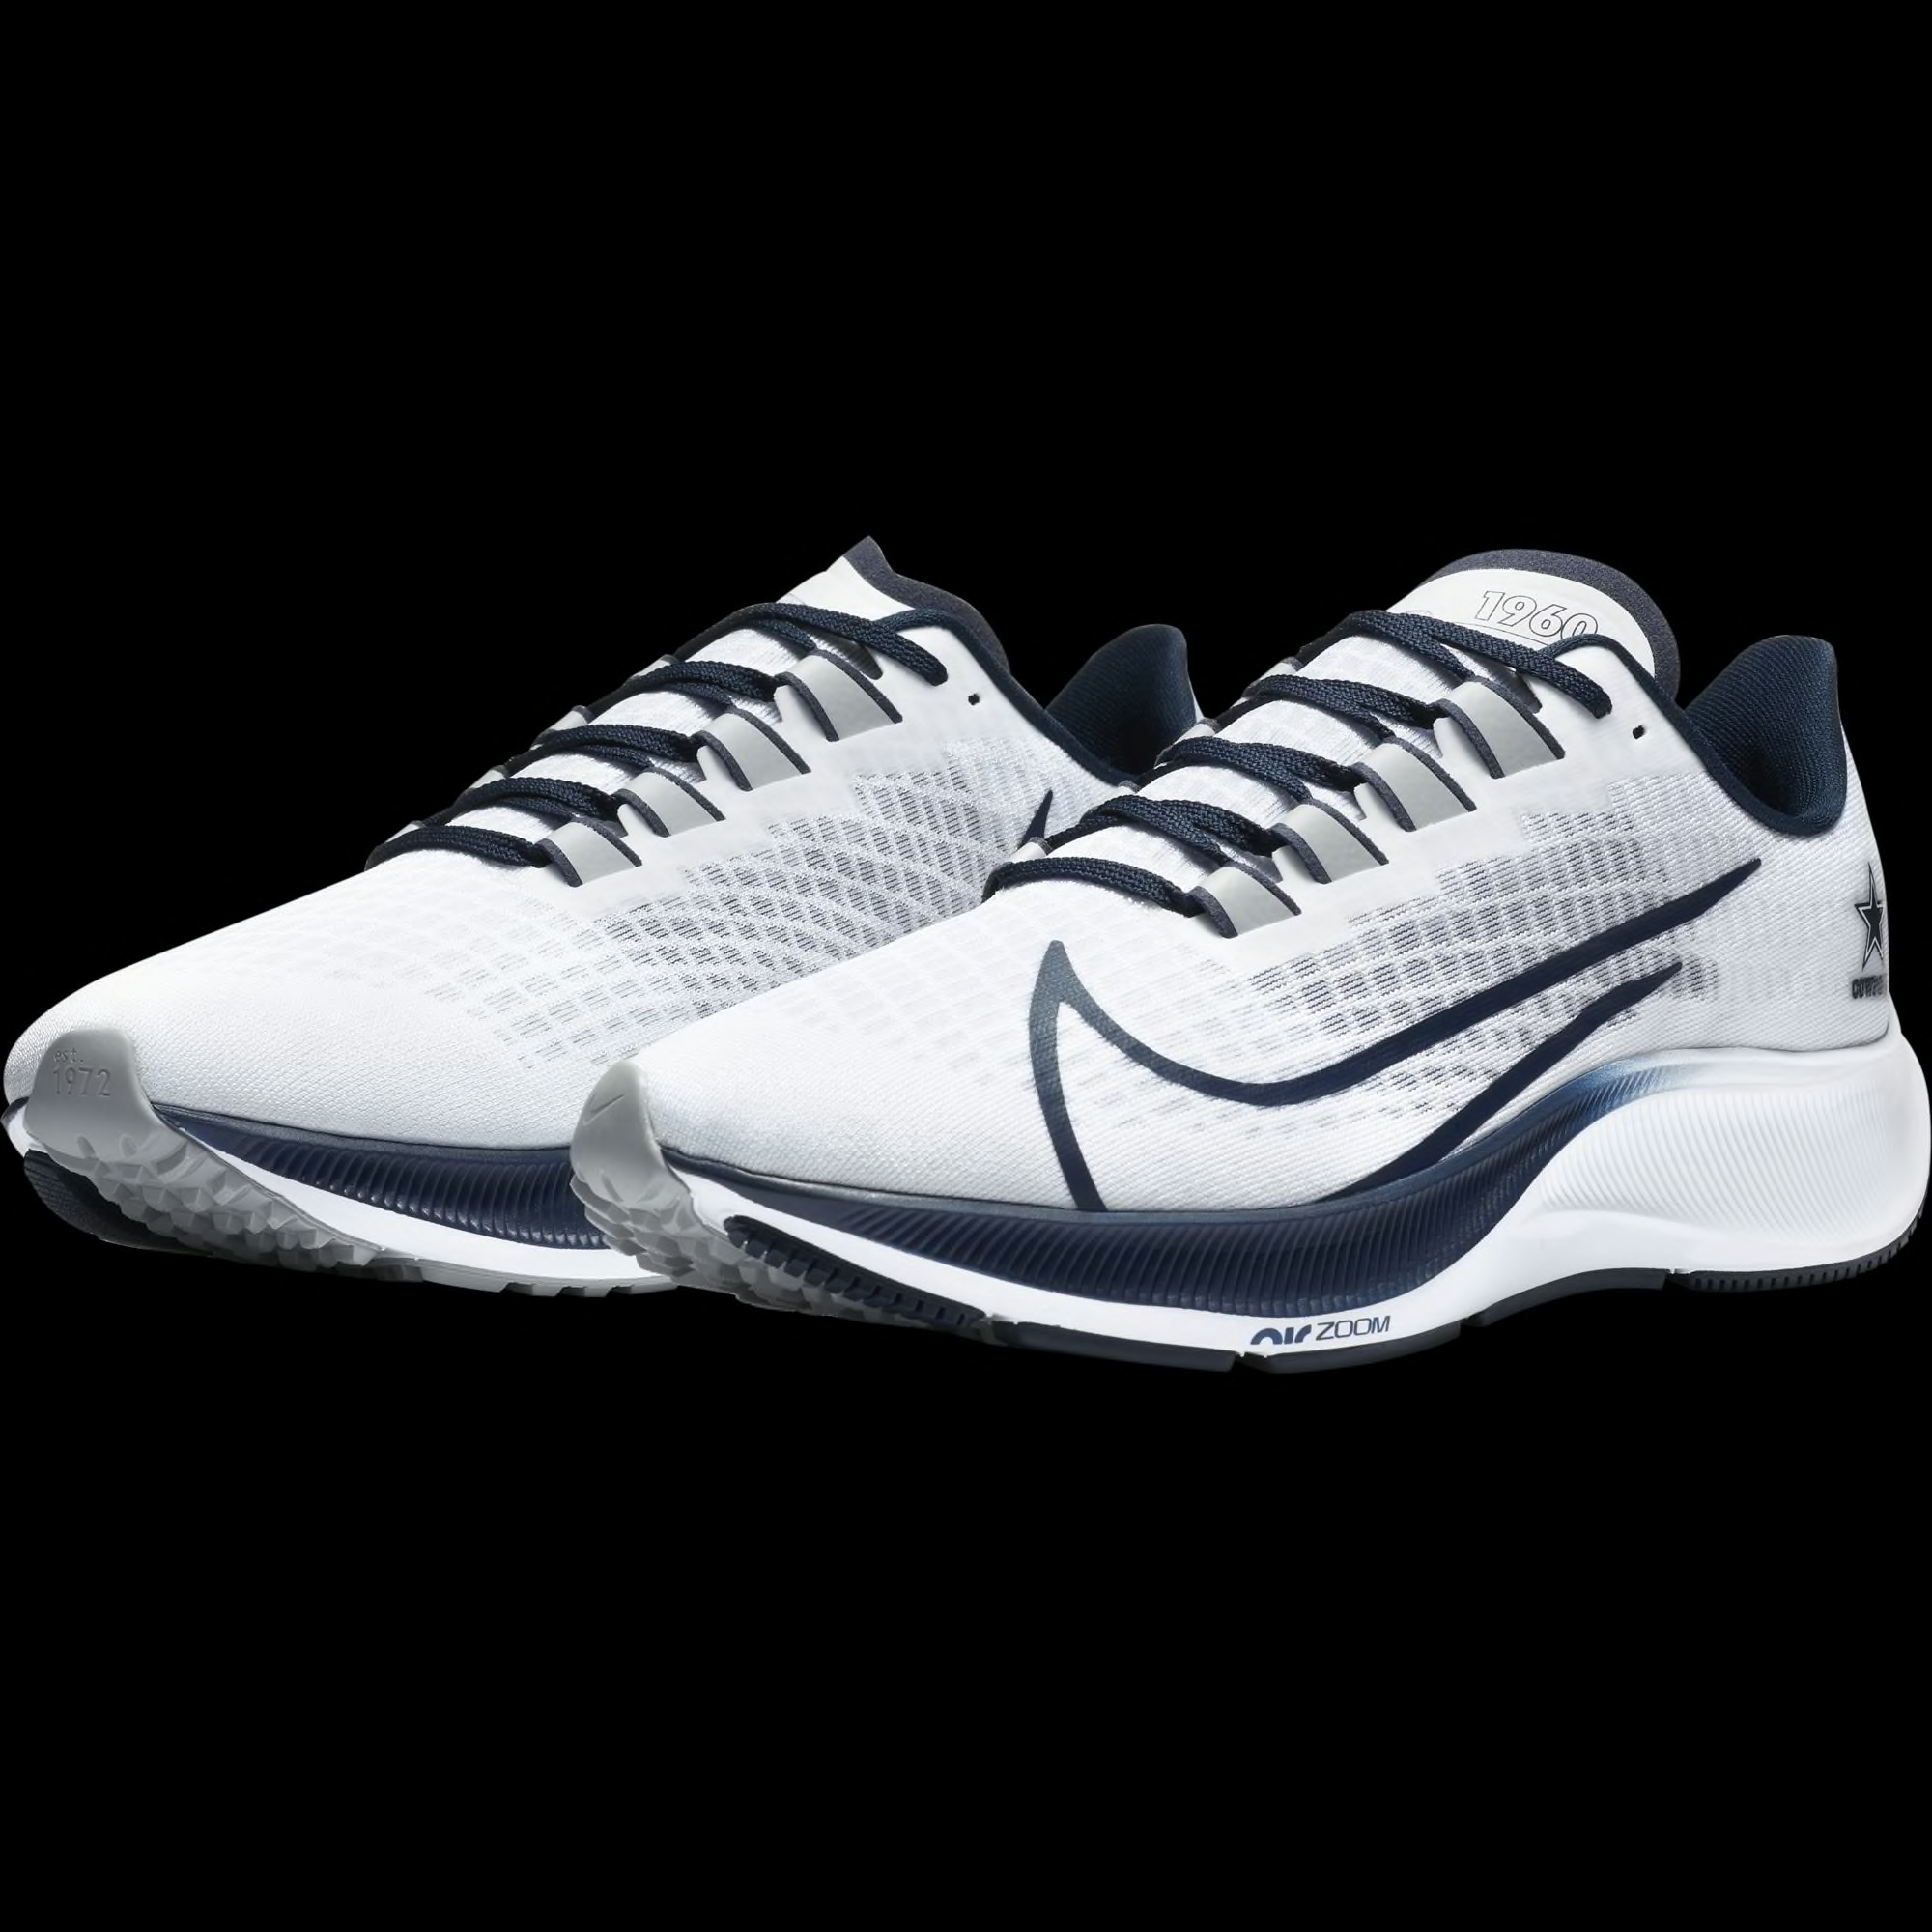 Dallas Cowboys Nike shoes